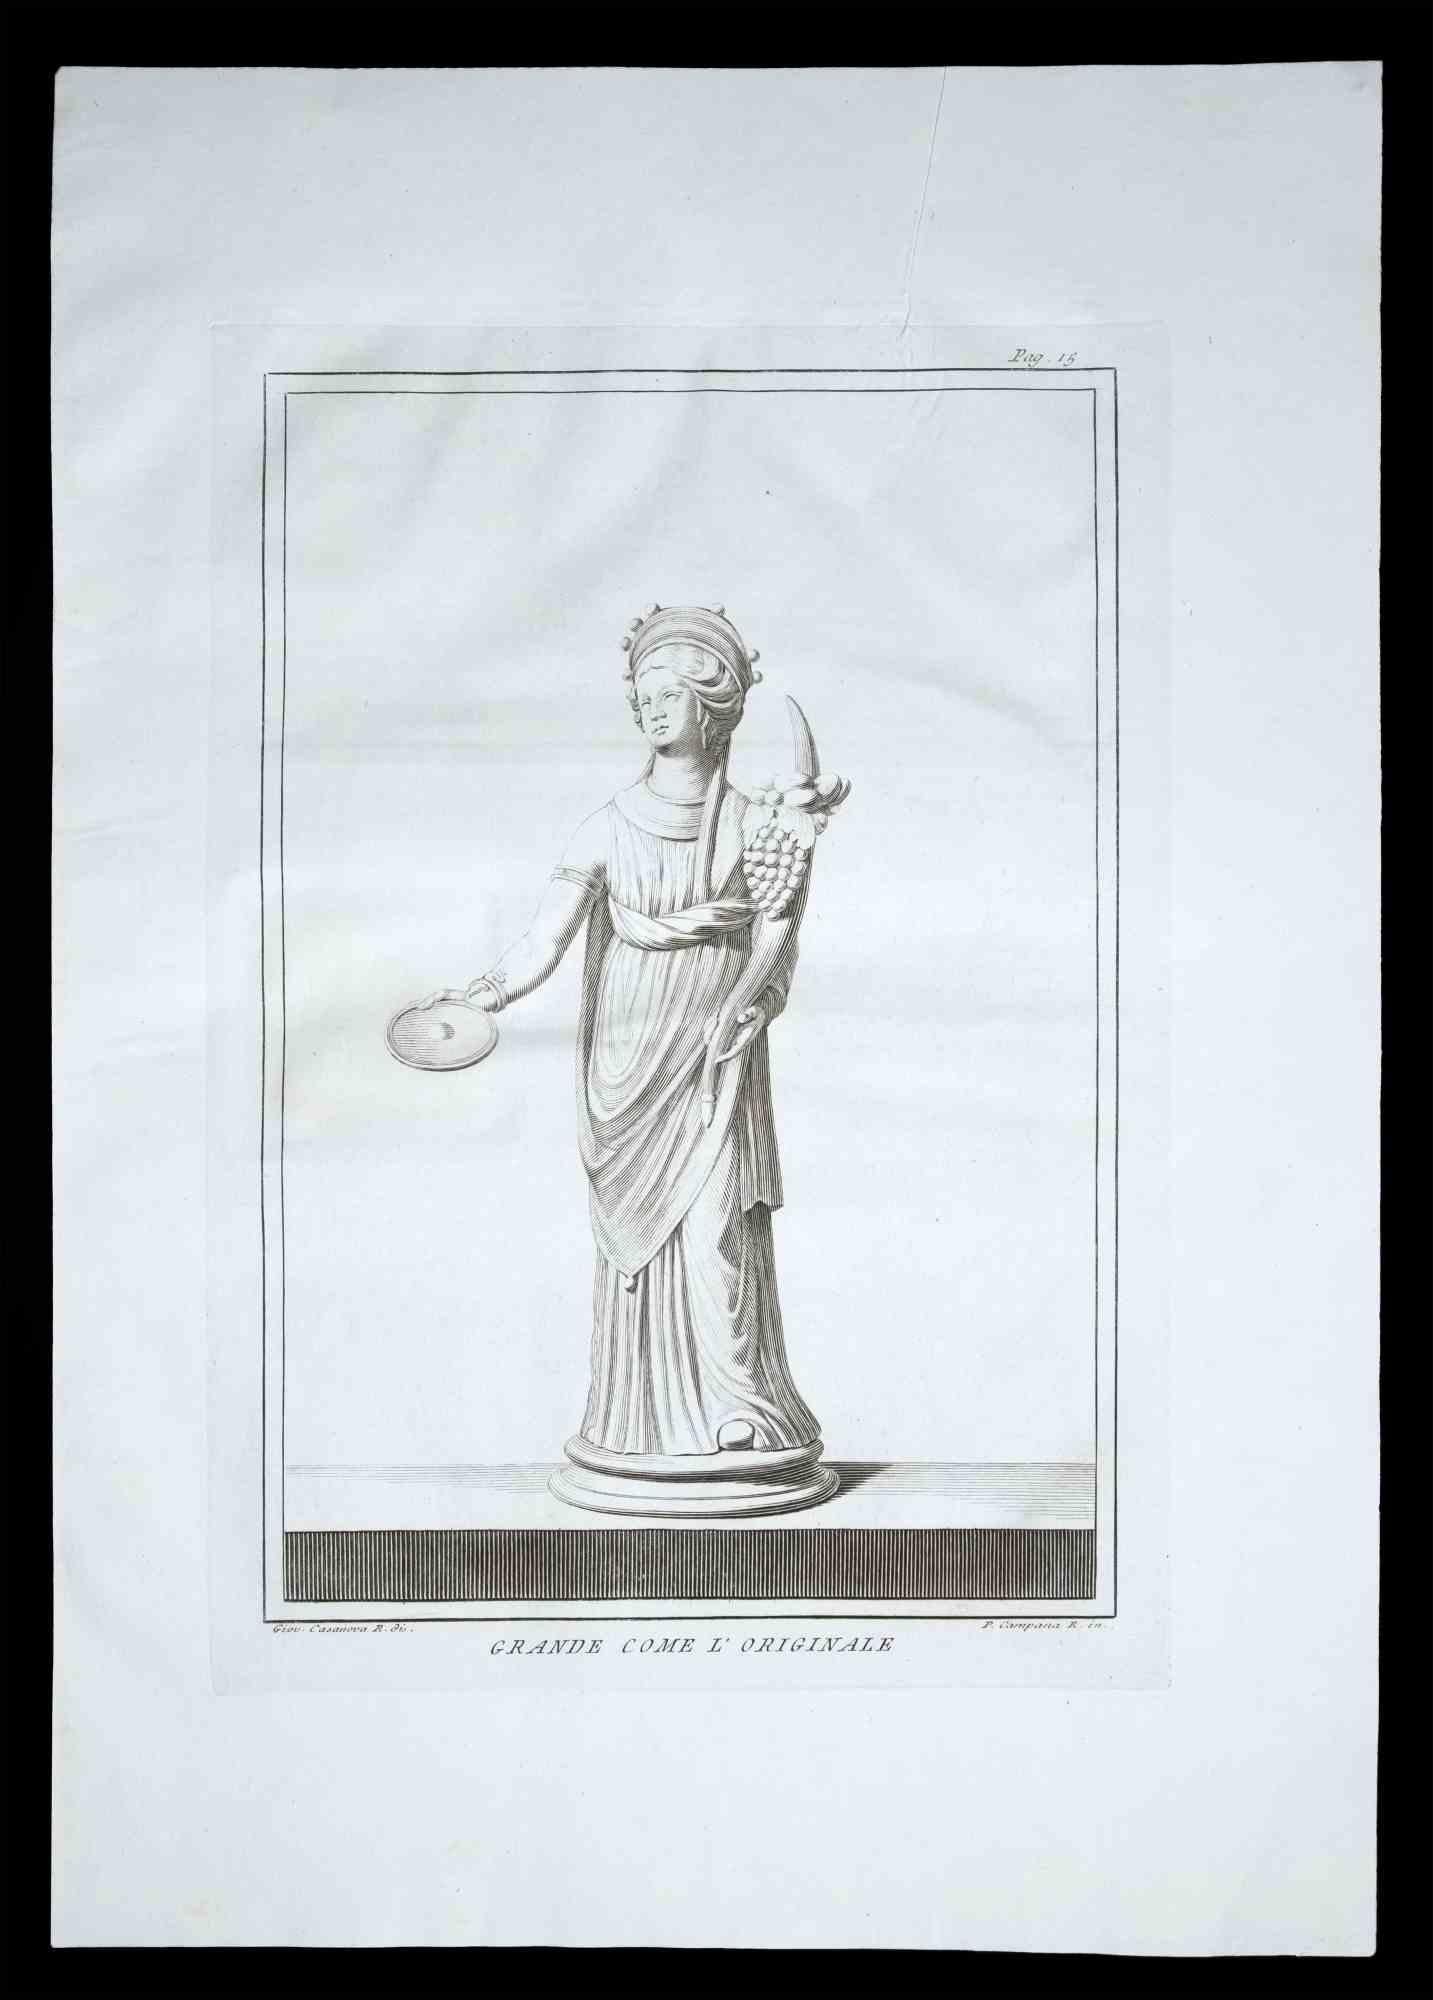 Ancient Roman Statue, aus der Serie "Antiquities of Herculaneum", ist eine Original-Radierung auf Papier von Pietro Campana realisiert.

Signiert auf der Platte unten rechts.

Guter Zustand mit leichten Falten.

Die Radierung gehört zu der